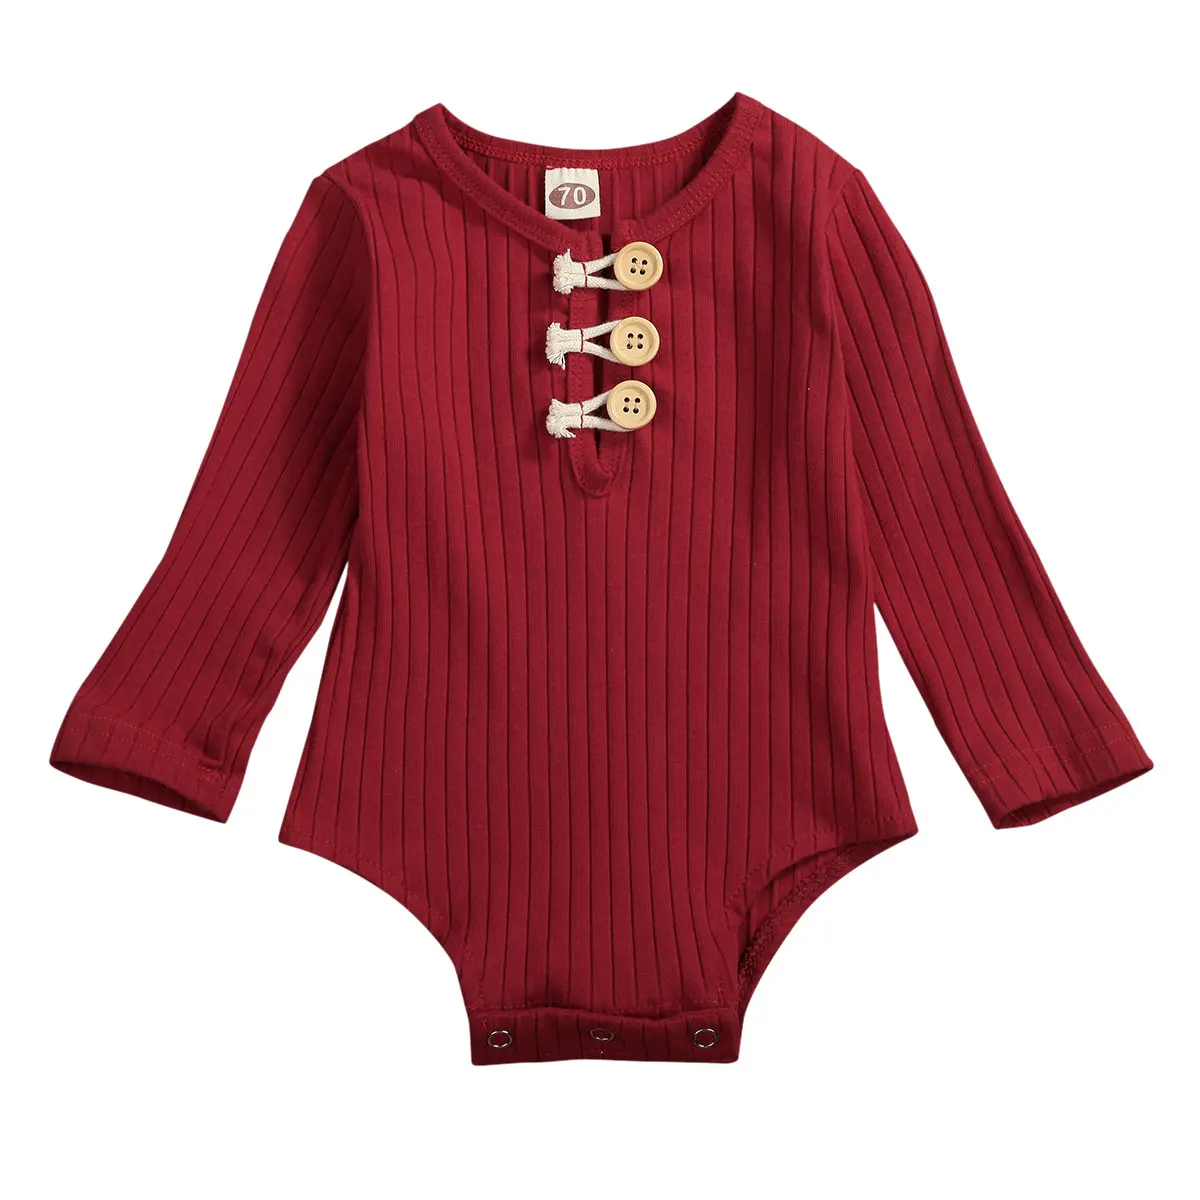 Хлопковый для новорожденных с длинным рукавом унисекс Bebe мальчик девочки комбинезон детская одежда трико боди Топы от 0 до 18 месяцев - Цвет: Красный